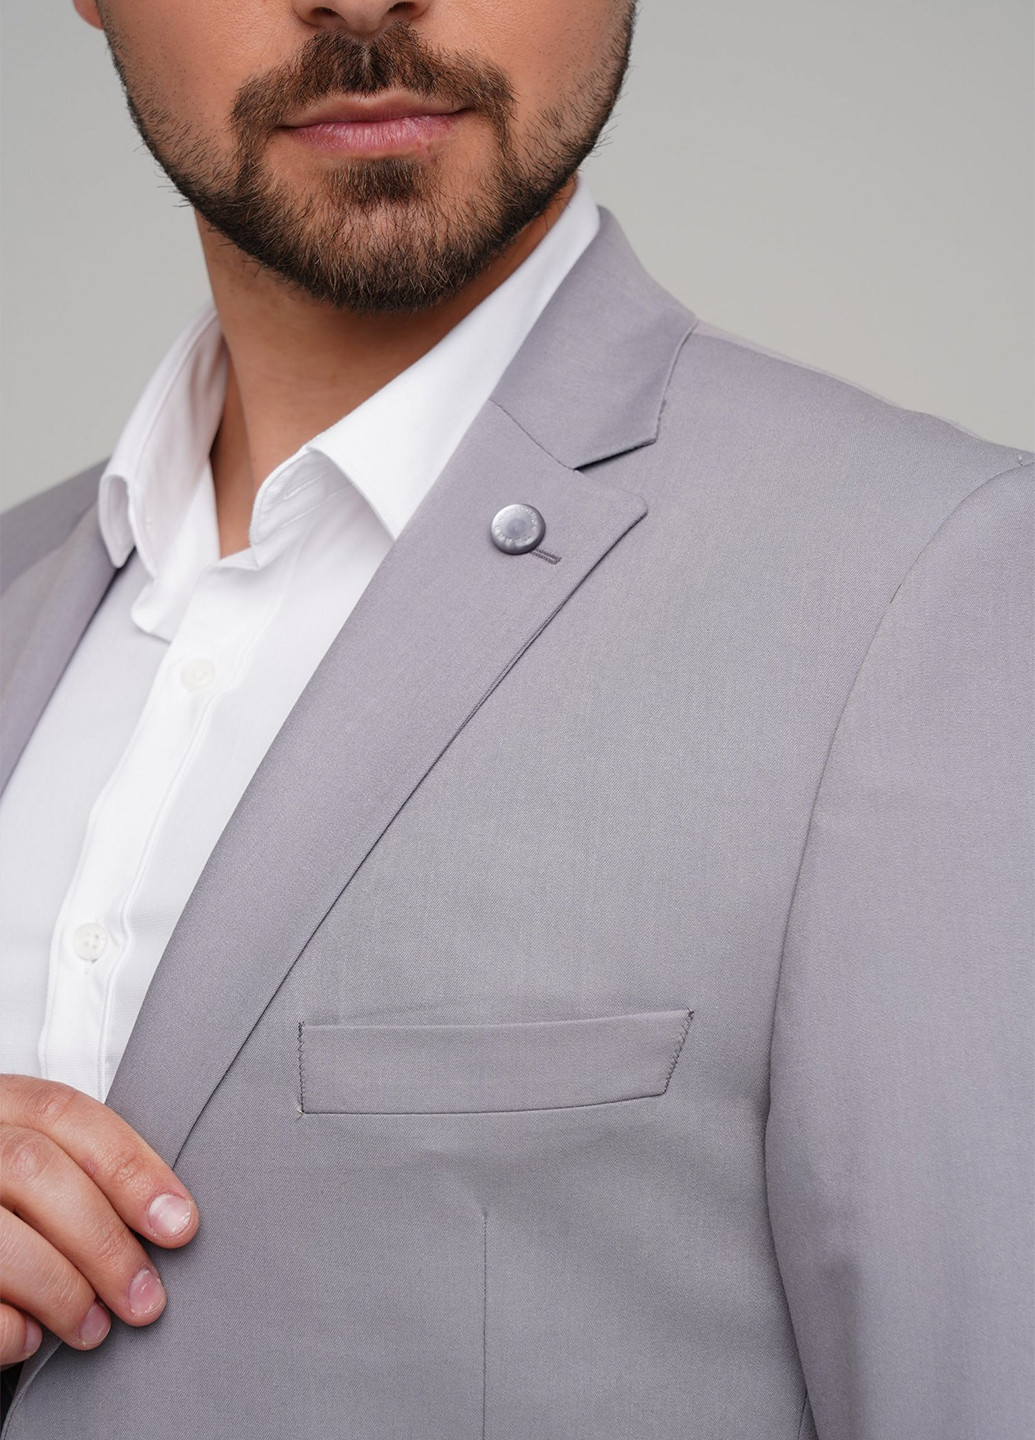 Светло-серый демисезонный костюм (пиджак, брюки) брючный Trend Collection